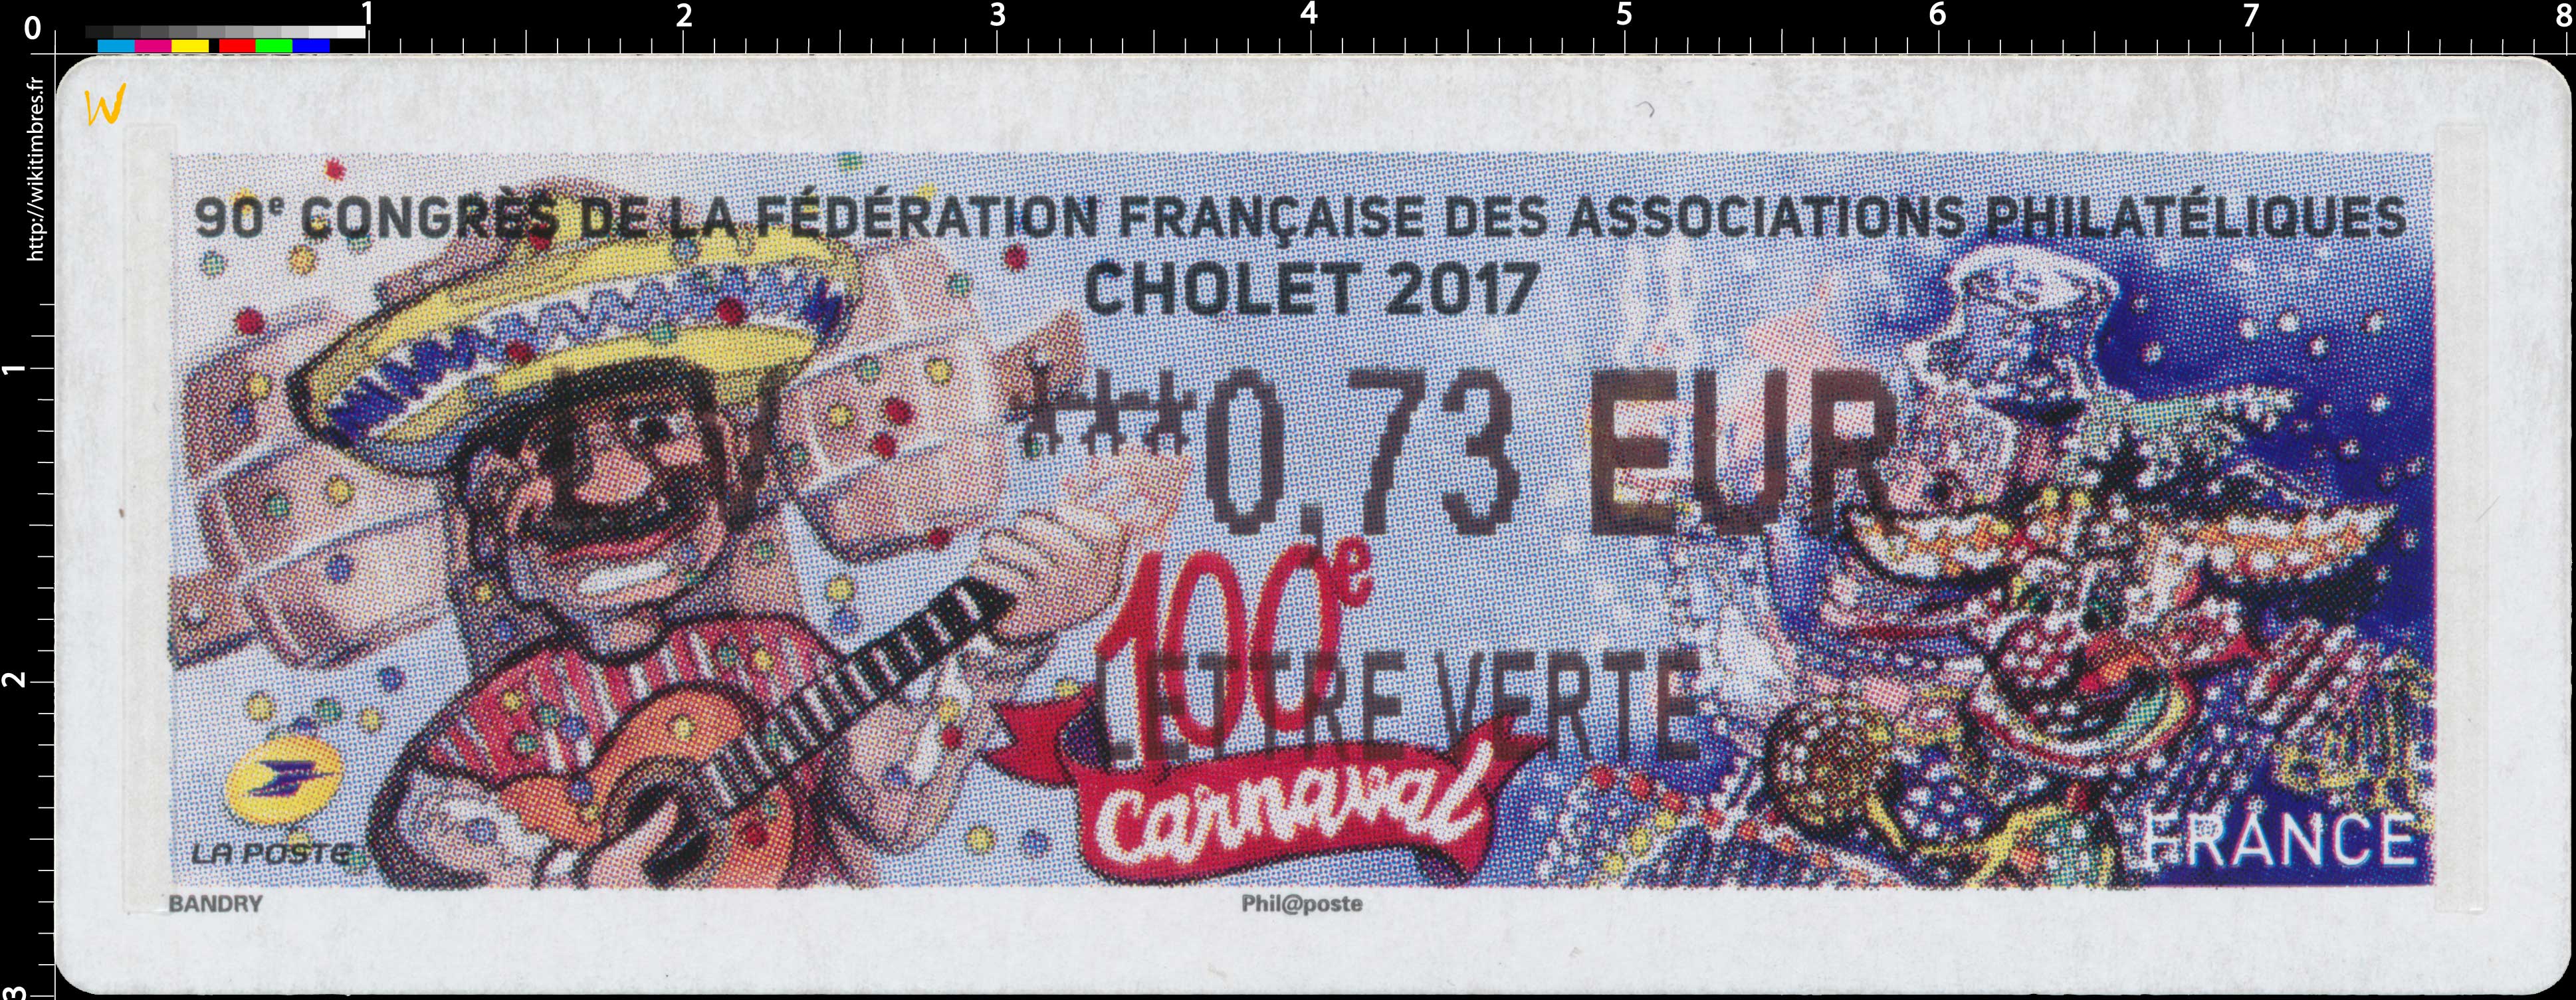 2017 90e Congrès de la Fédération Française des associations philatéliques - Cholet 